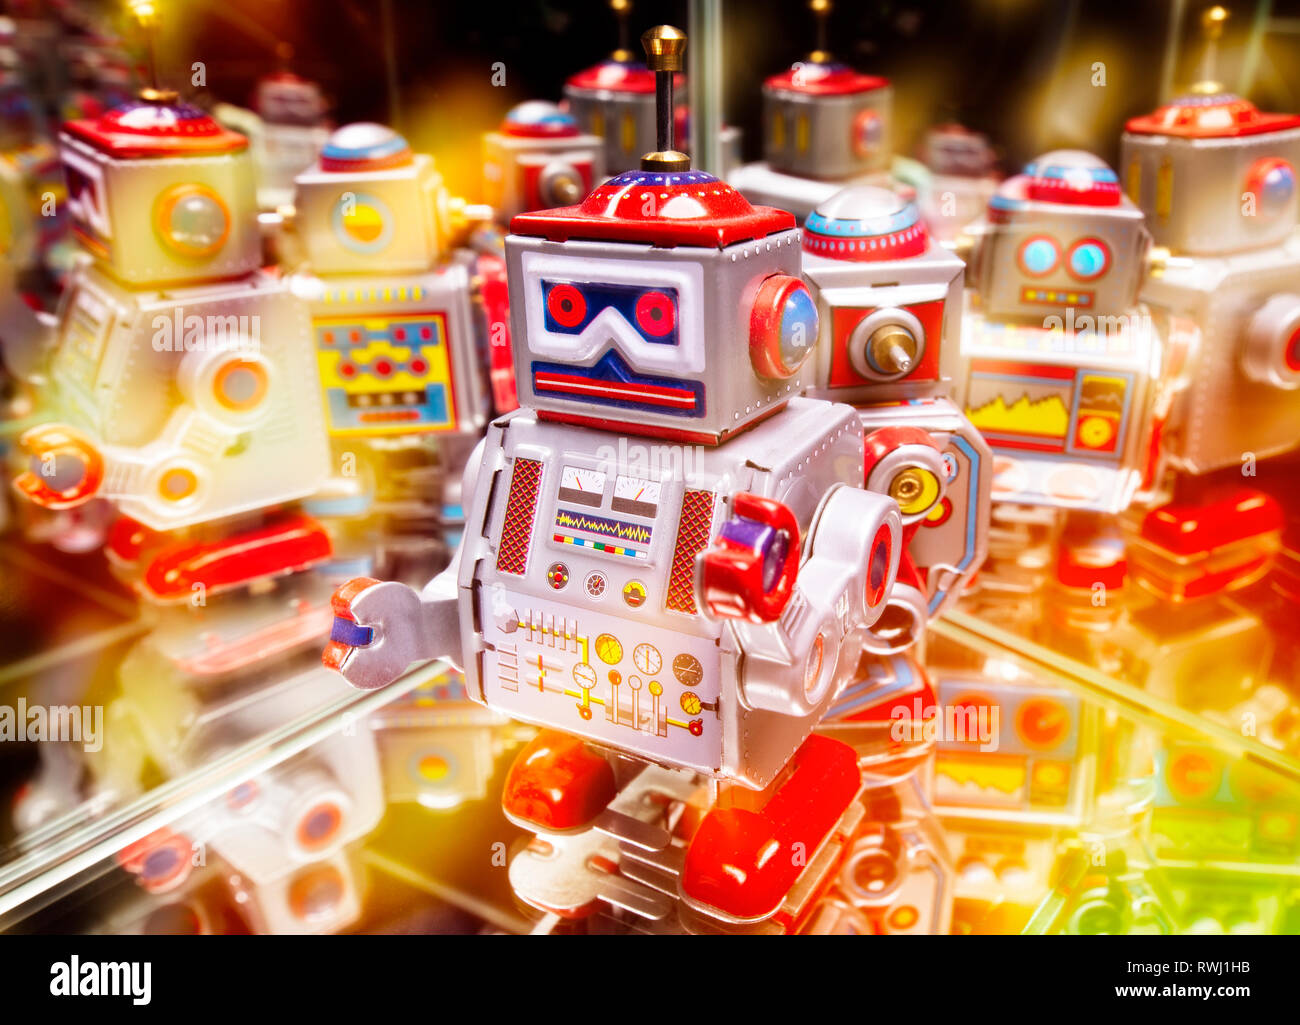 Robot con riflessioni e varie luci colorate Foto Stock